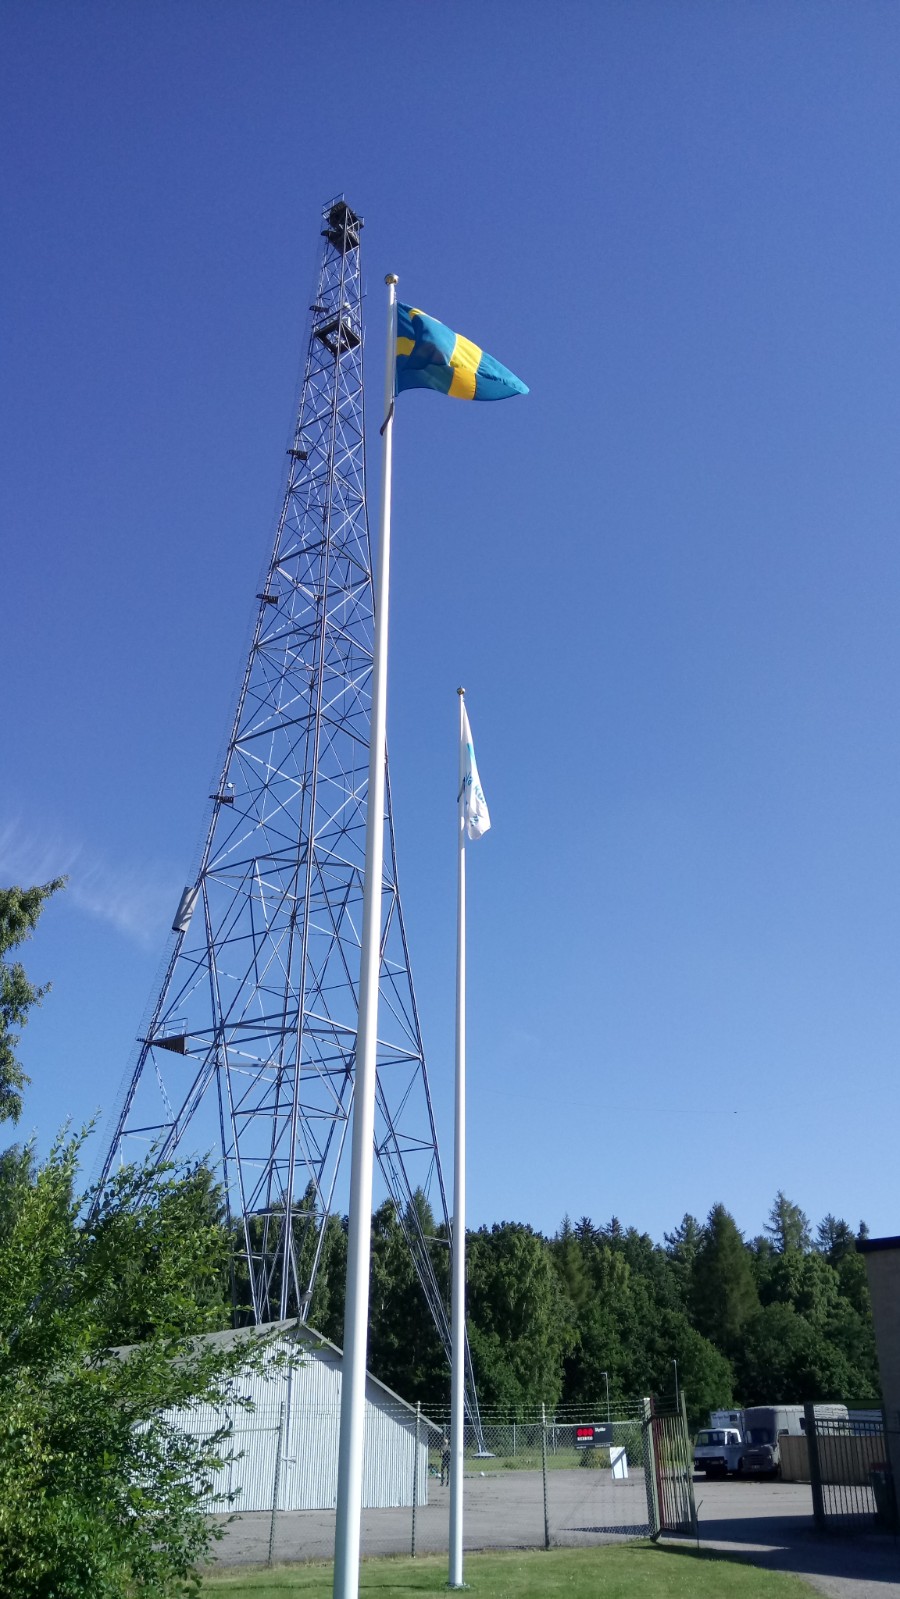 Motalamasten bredvid svenska flaggan.